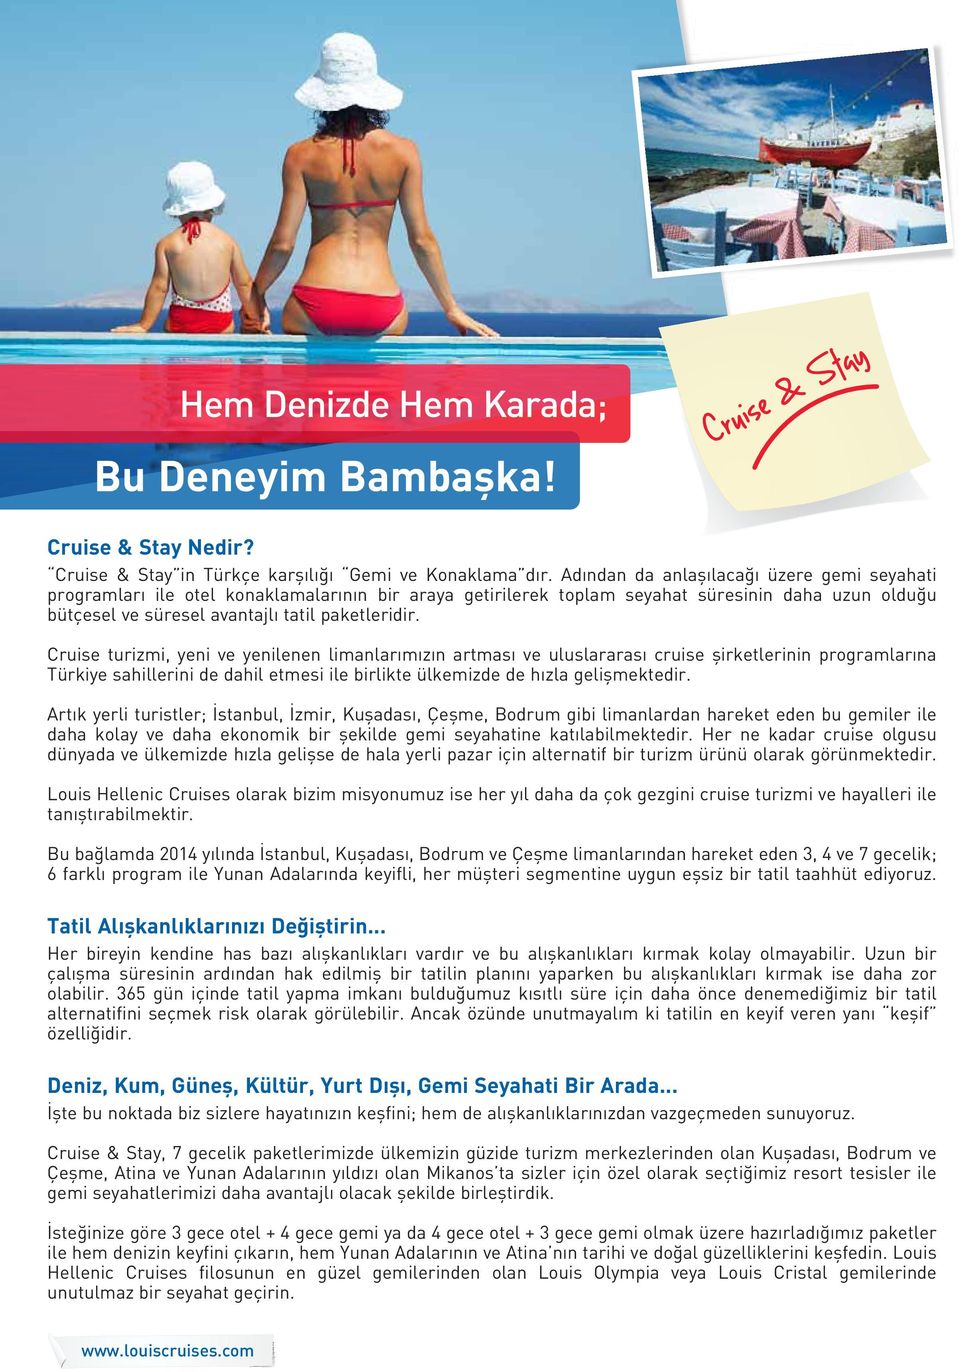 Cruise turizmi, yeni ve yenilenen limanlarımızın artması ve uluslararası cruise şirketlerinin programlarına Türkiye sahillerini de dahil etmesi ile birlikte ülkemizde de hızla gelişmektedir.